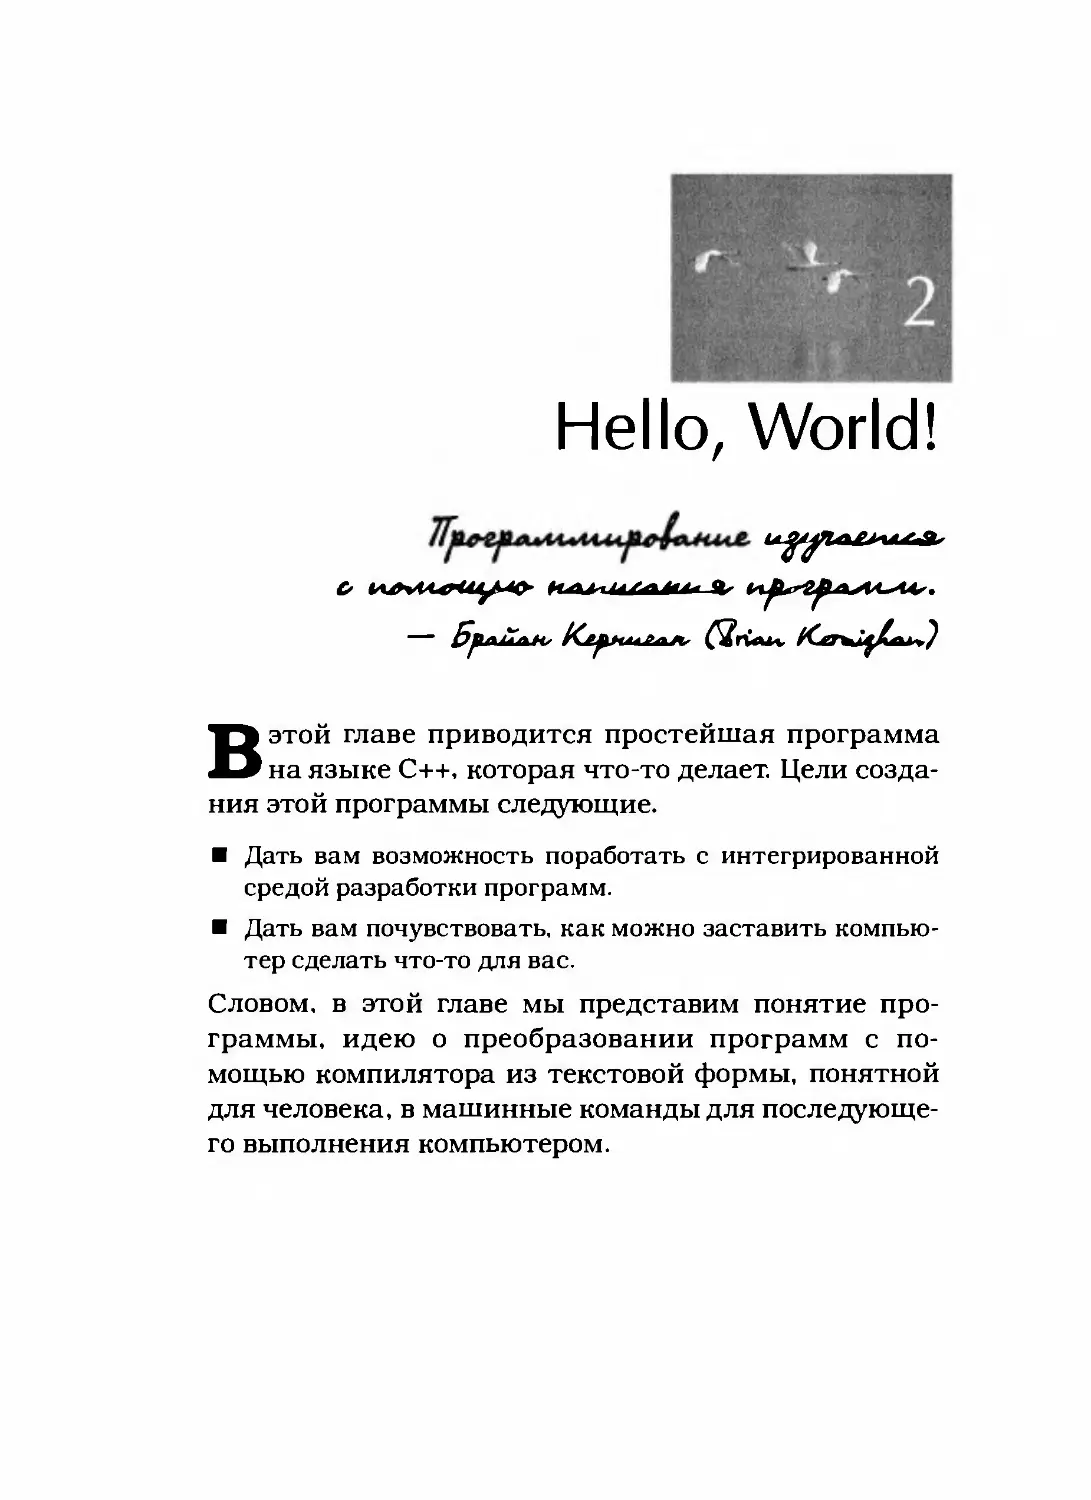 Глава 2. Hello, World!